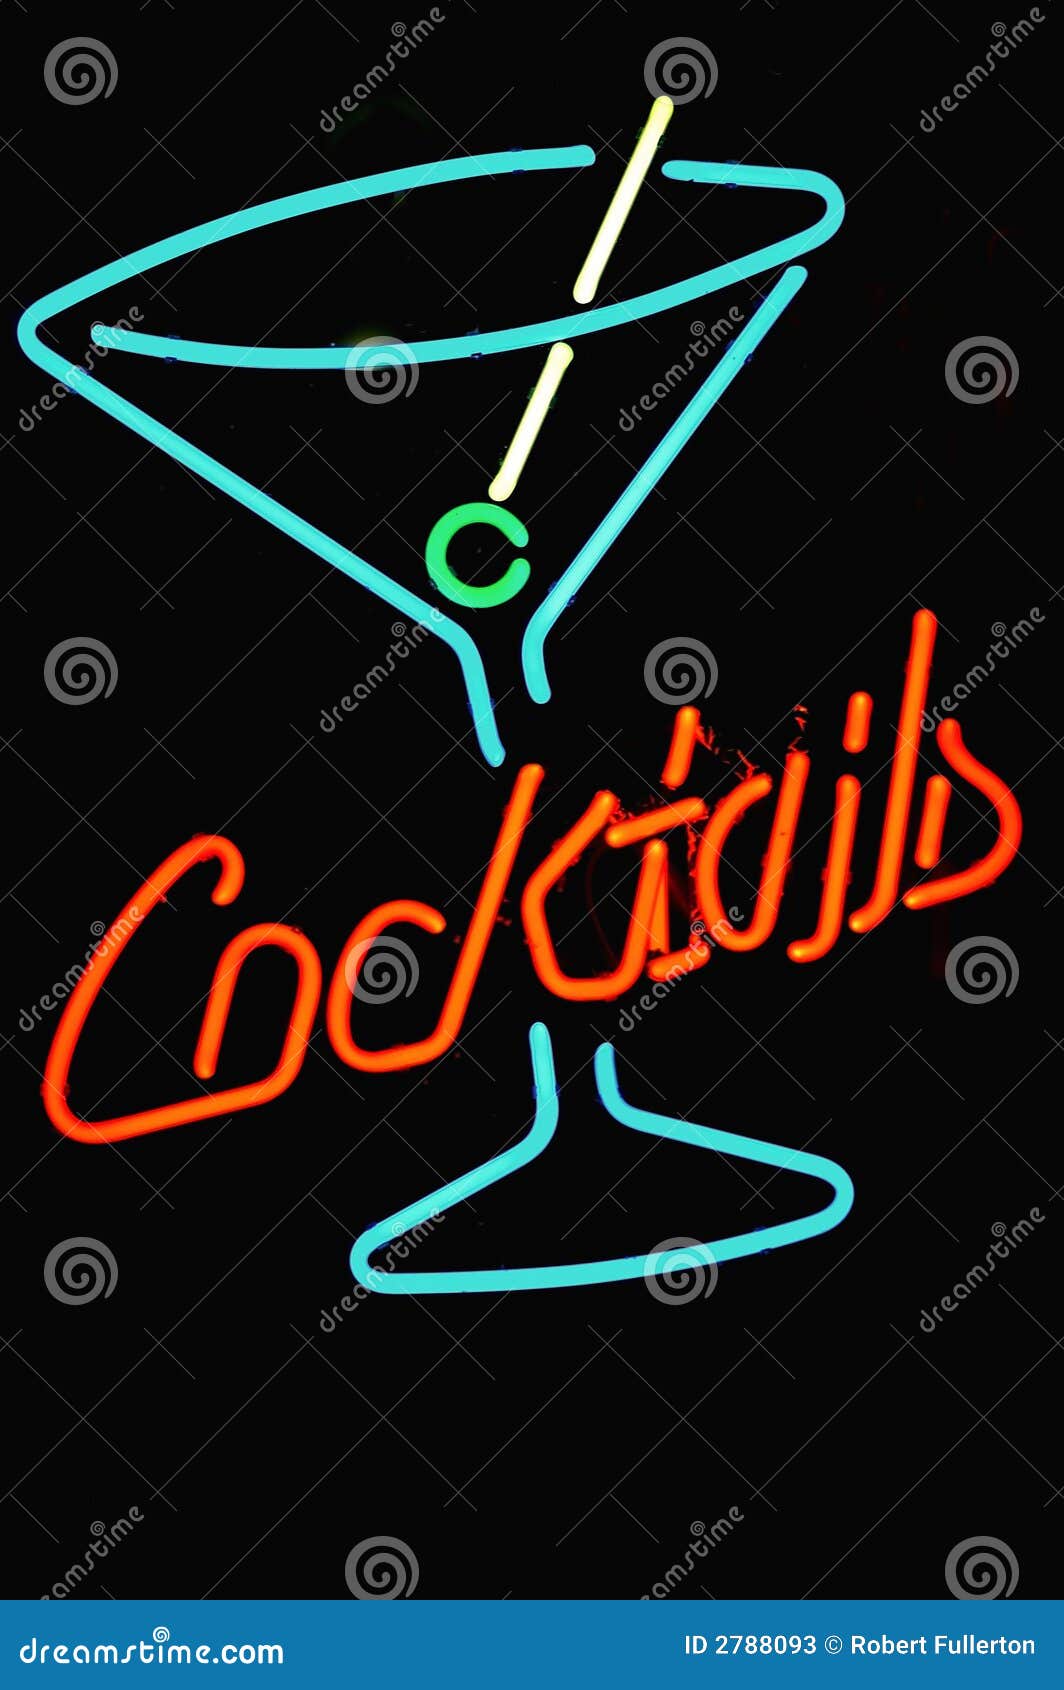 Neon cocktail image stock image. Image de cocktails